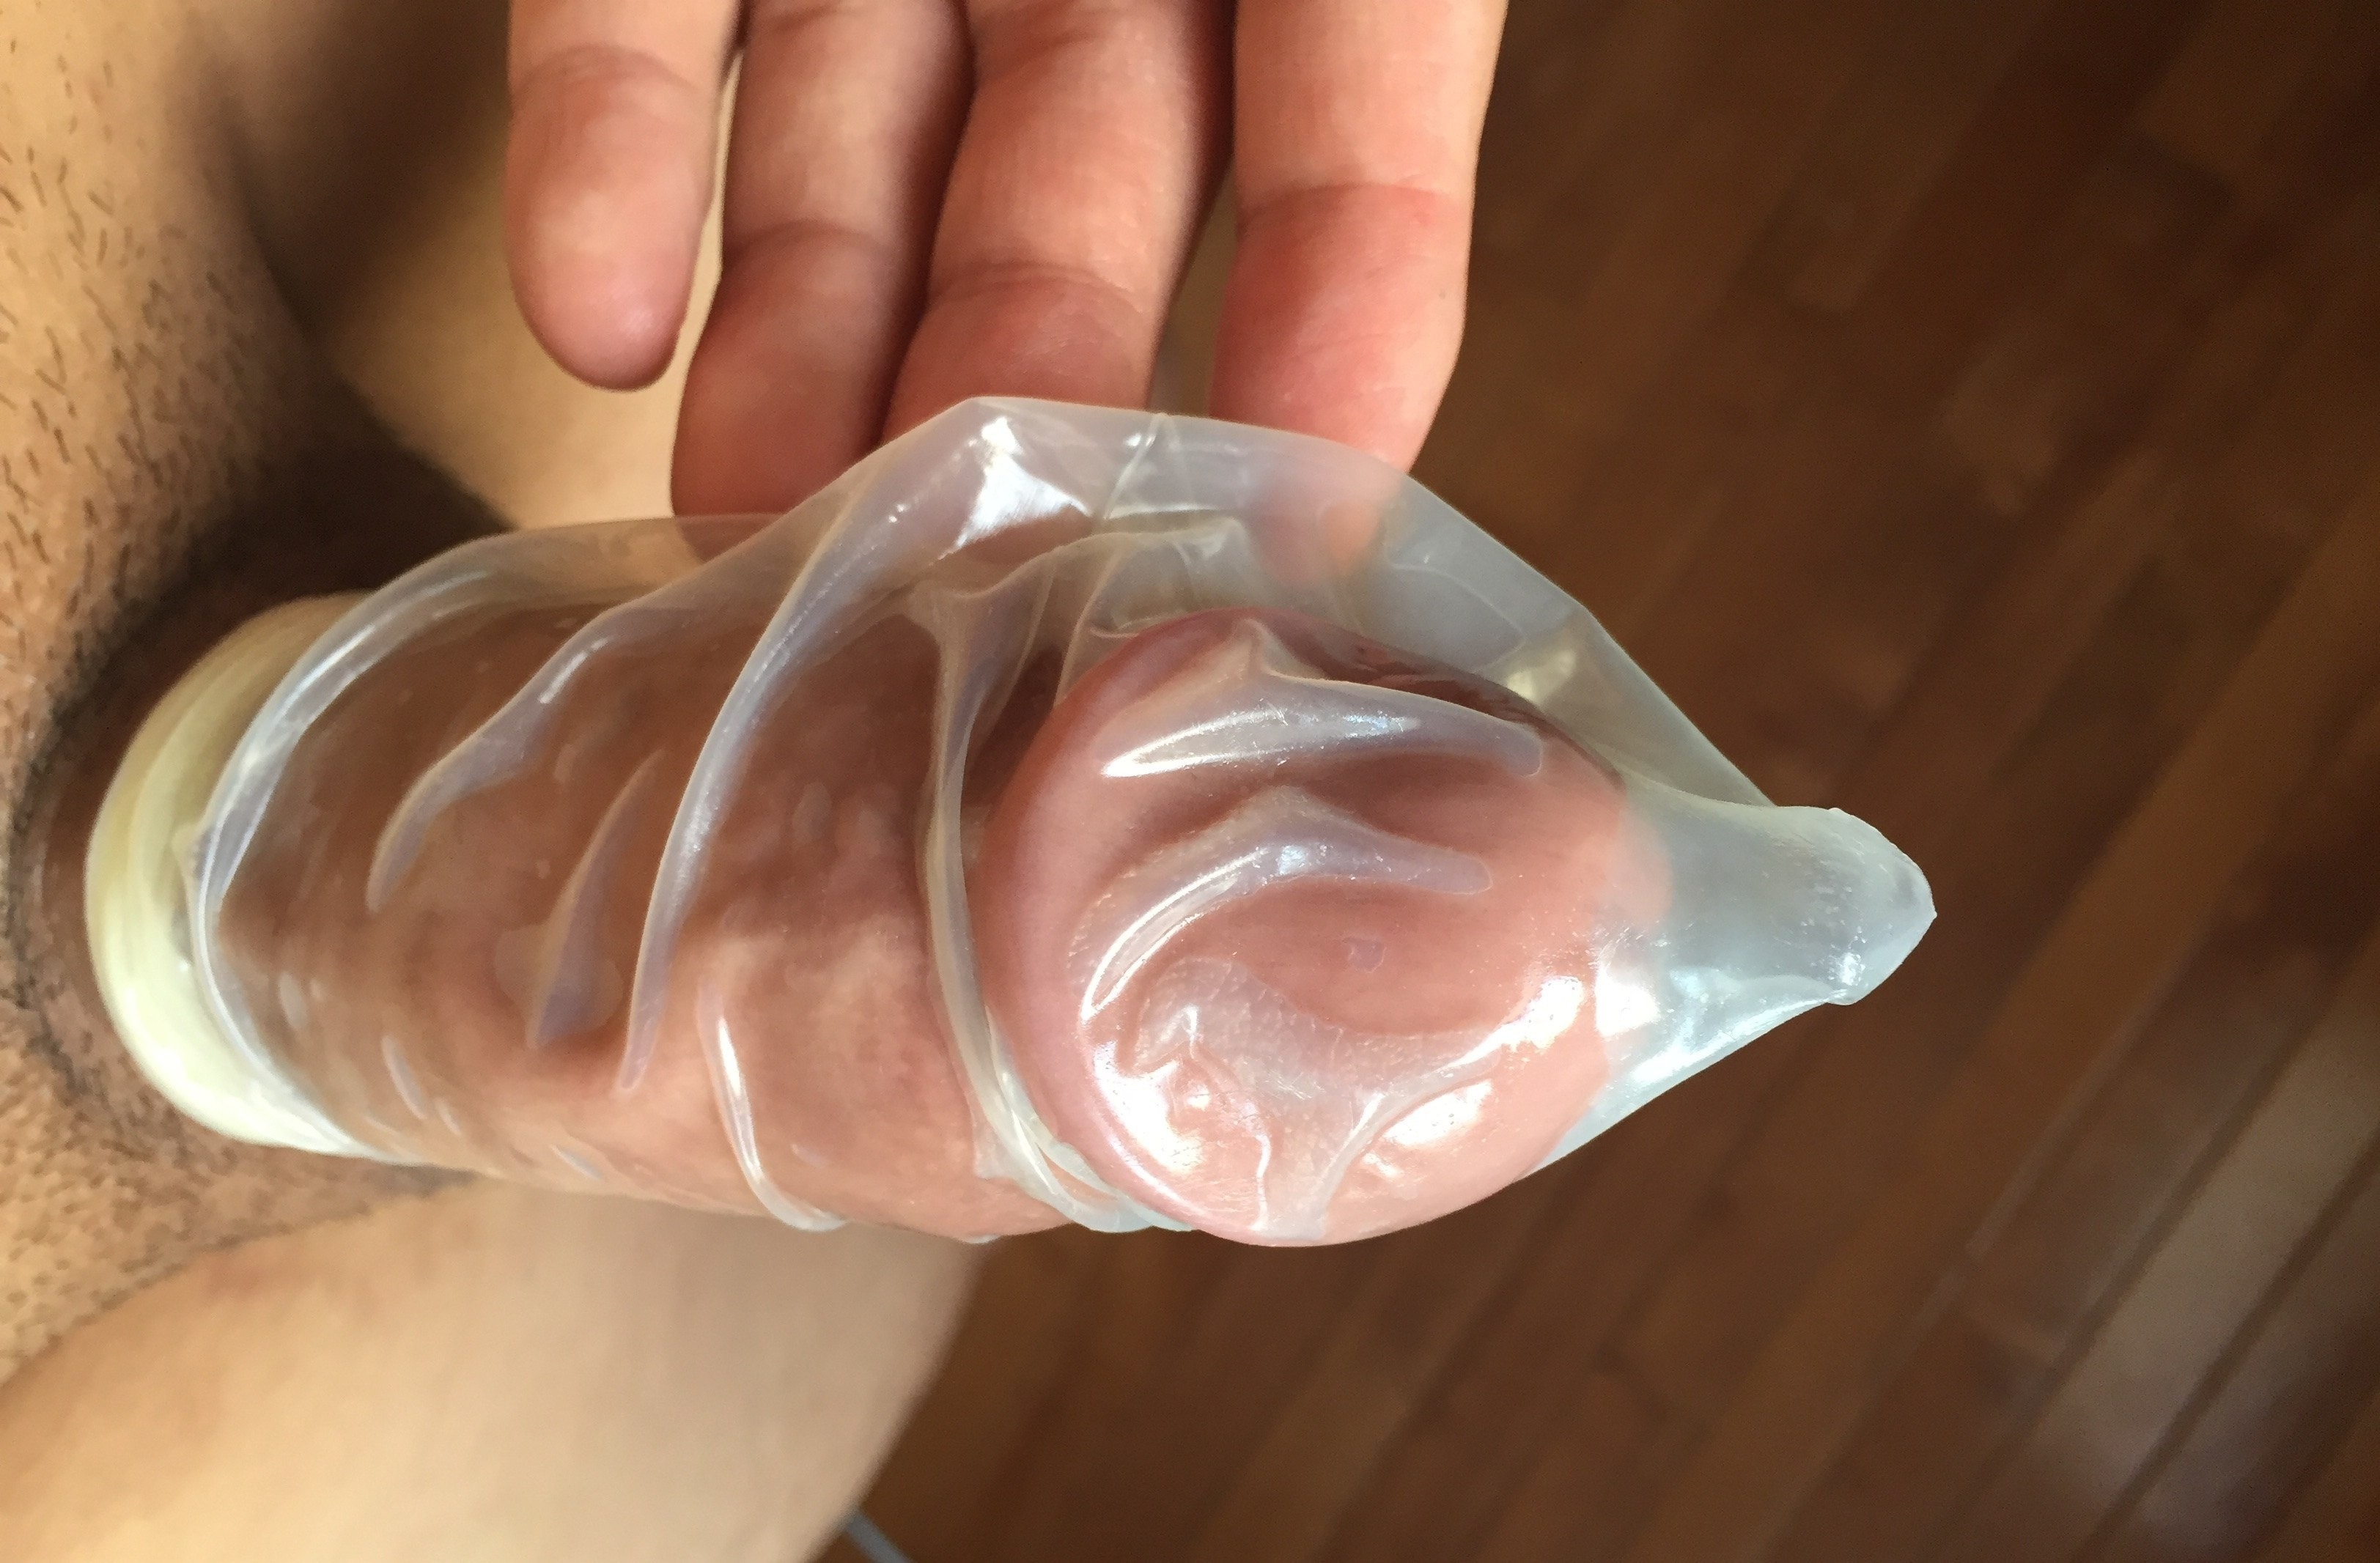 как надеть презерватив видео порно фото 76